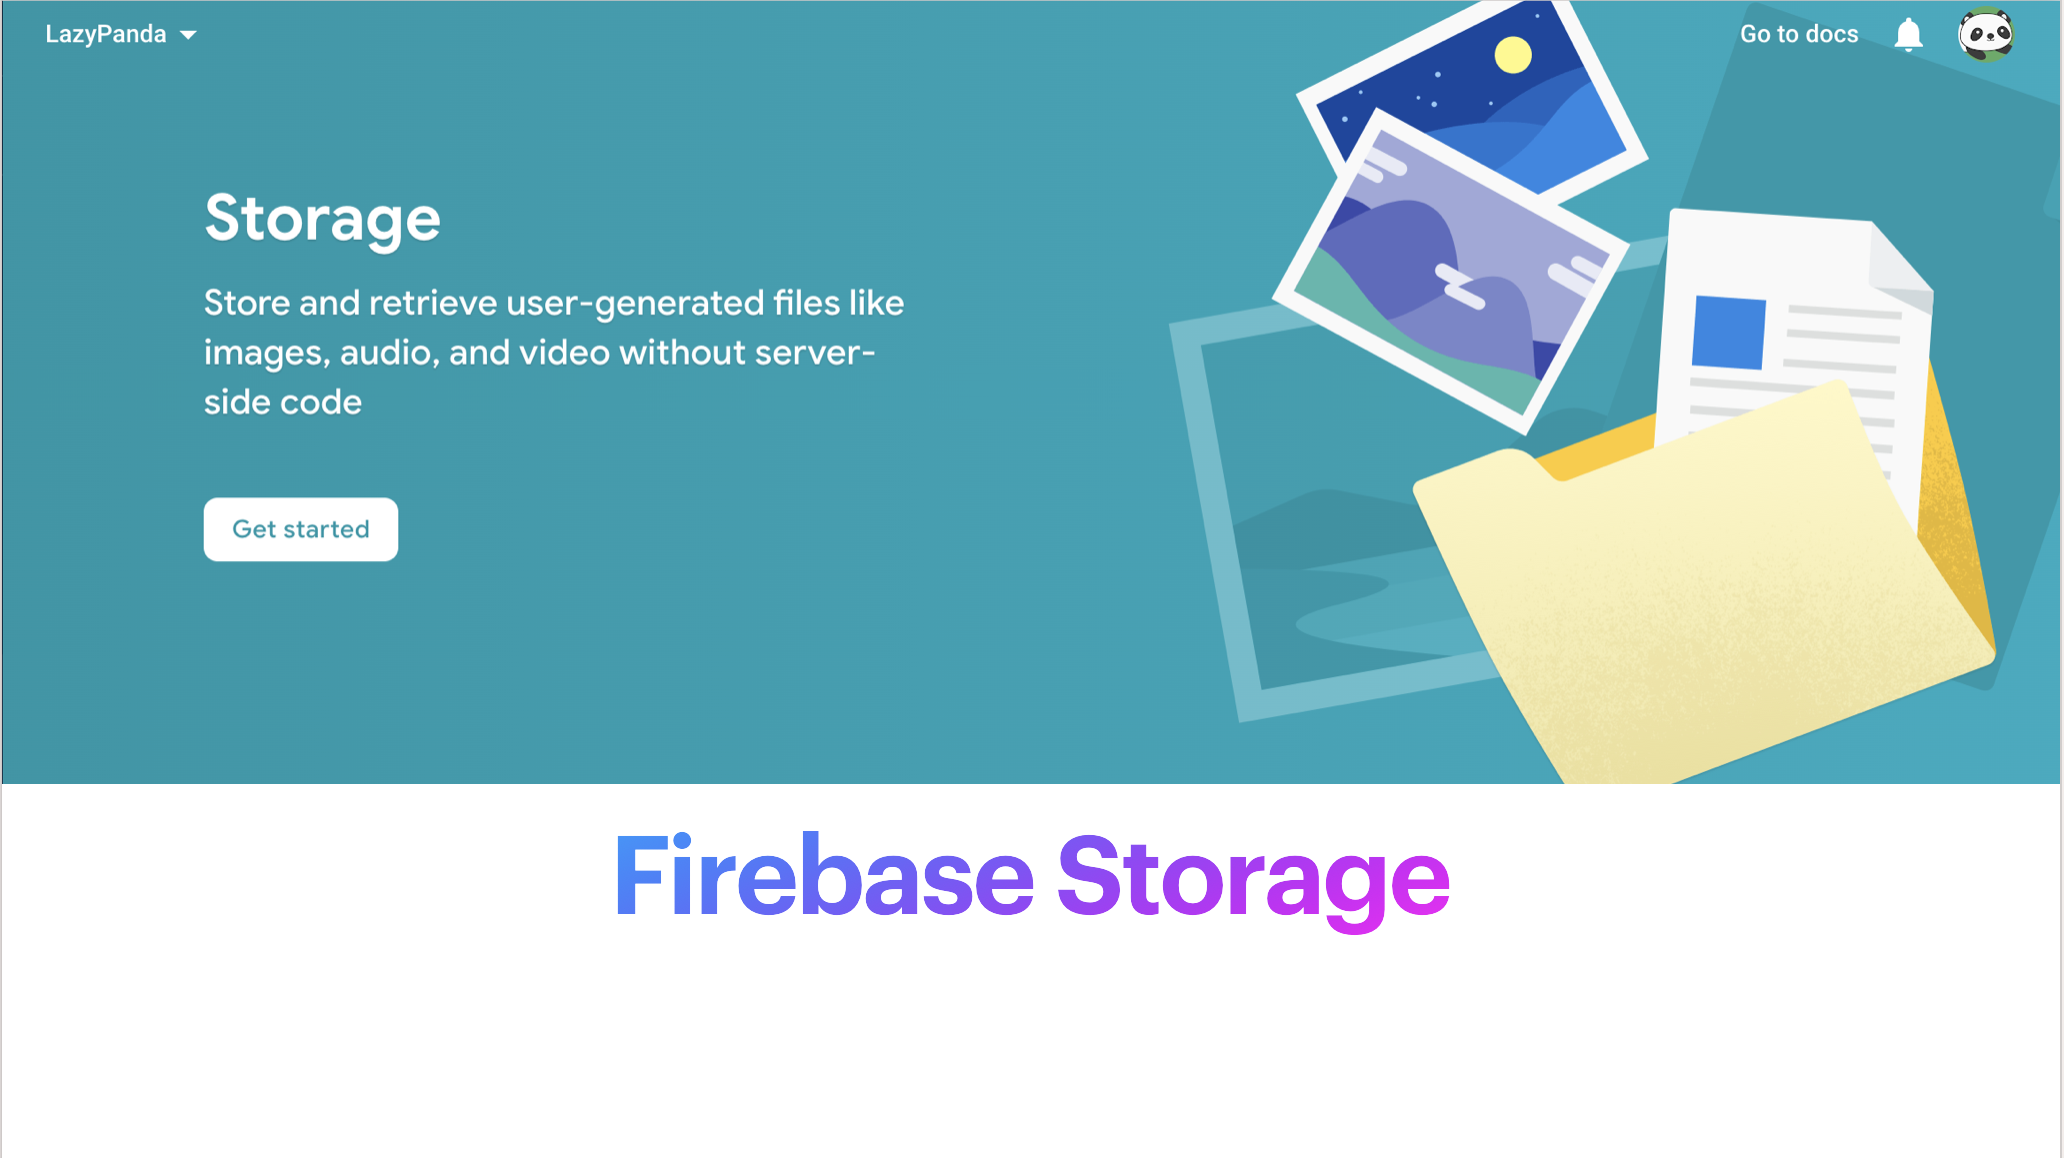 firebase storage image upload using multer